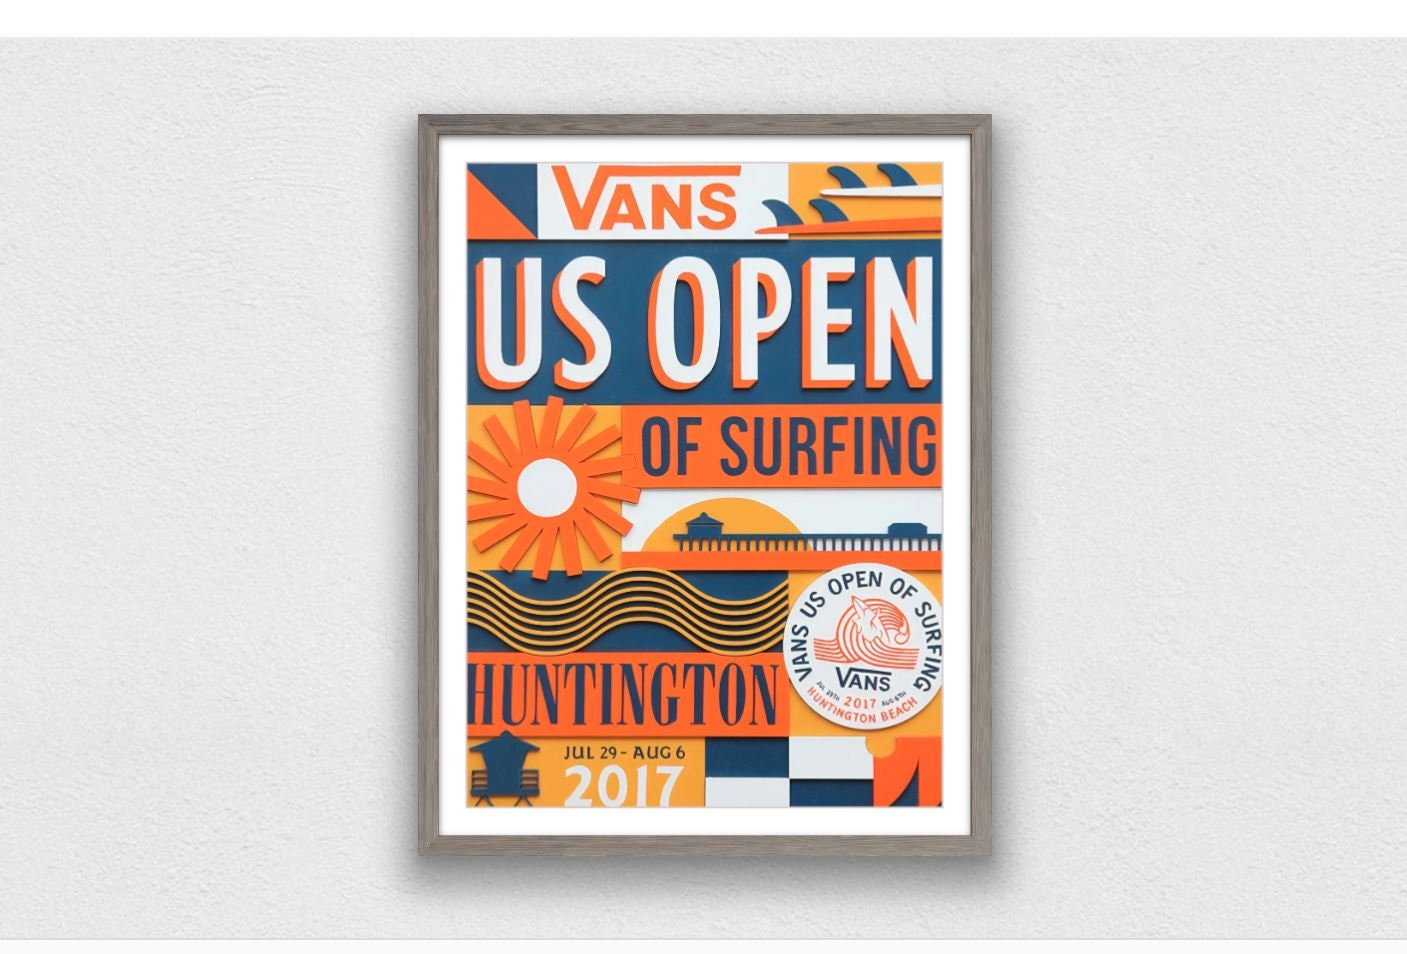 Raad eens baseren plug 2017 VANS U.S. OPEN Competition Print Surfing Poster - Etsy